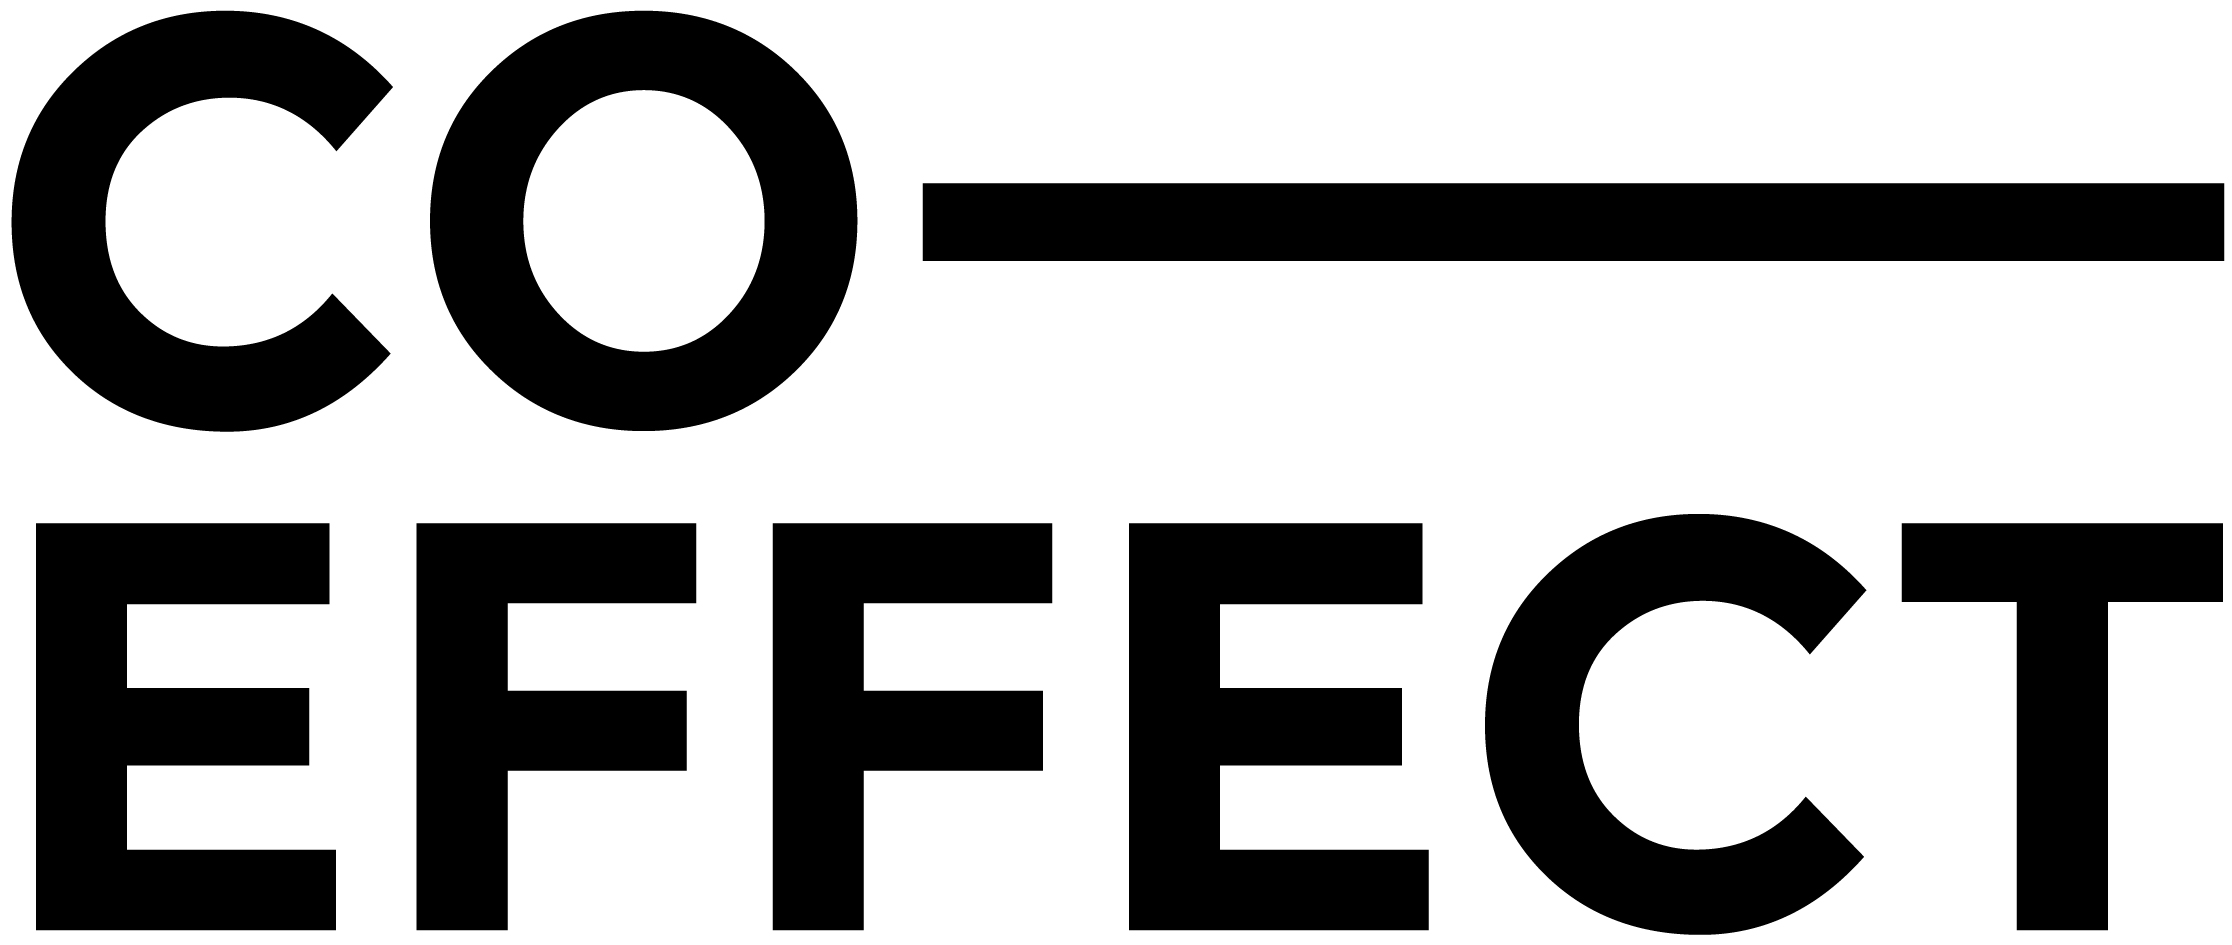 Co-Effect (logo)